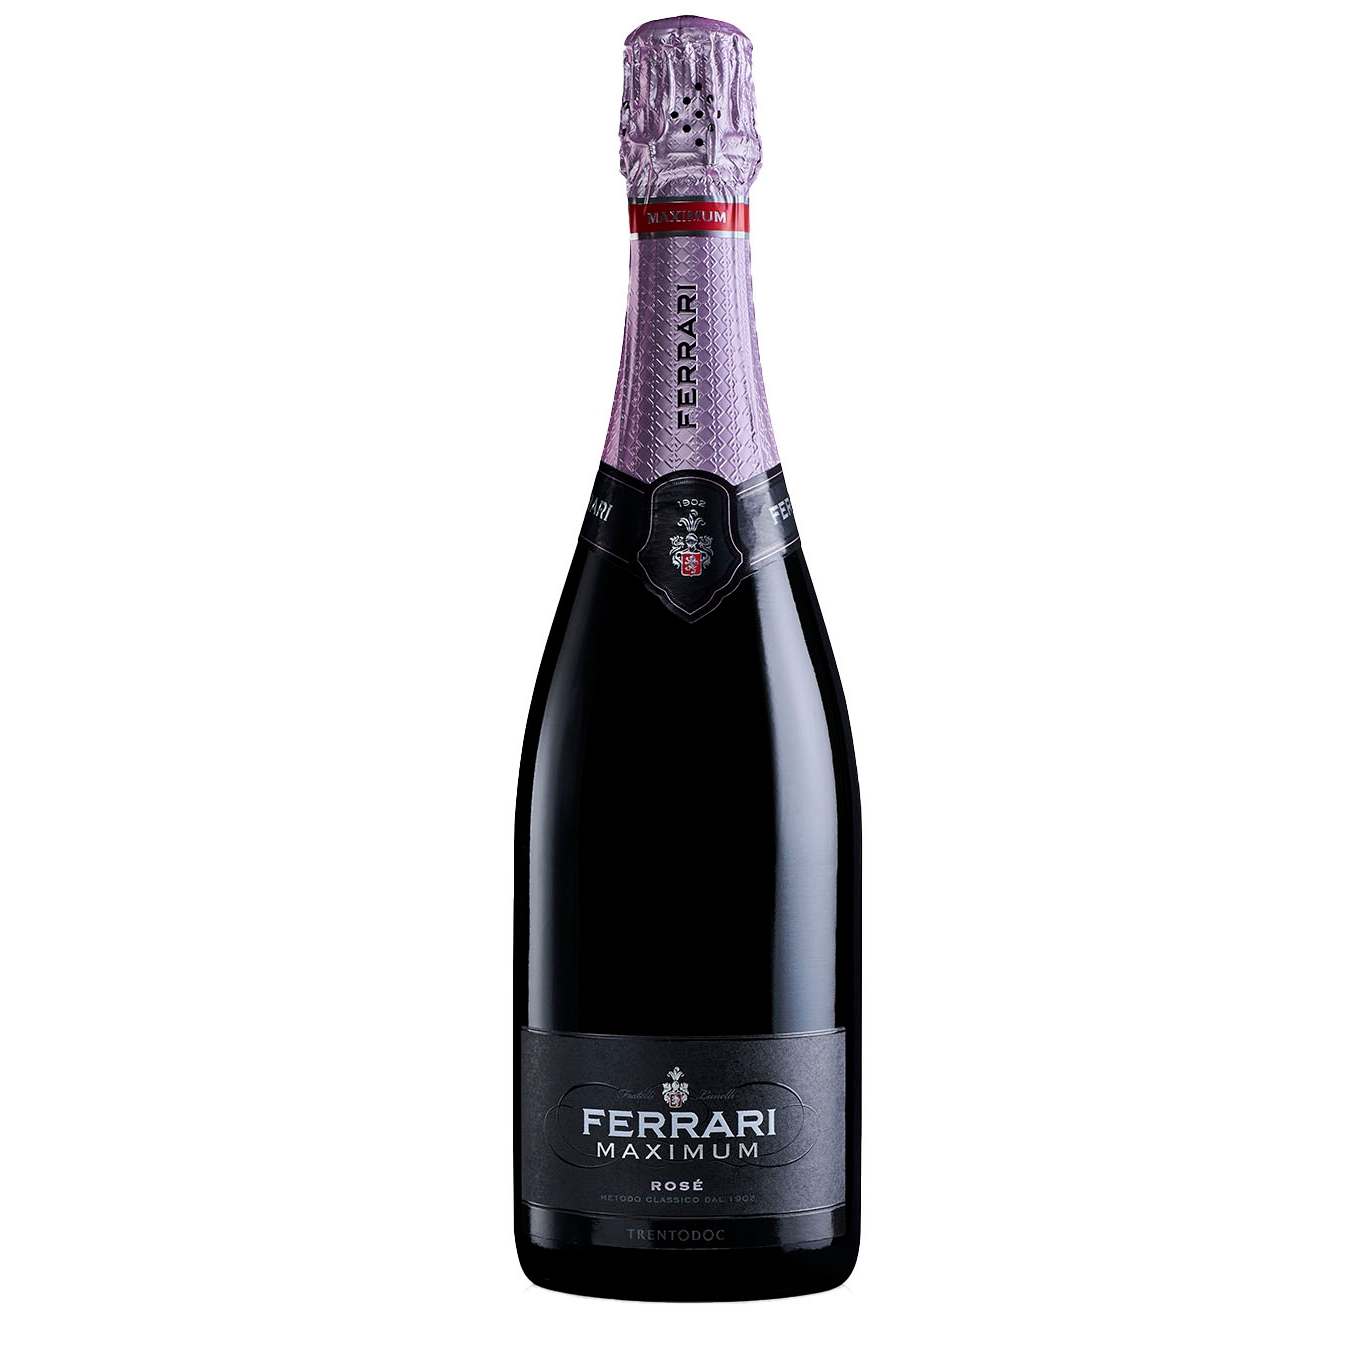 Ferrari Maximum Rosé Trentodoc Sparkling Wine NV Sparkling Wine